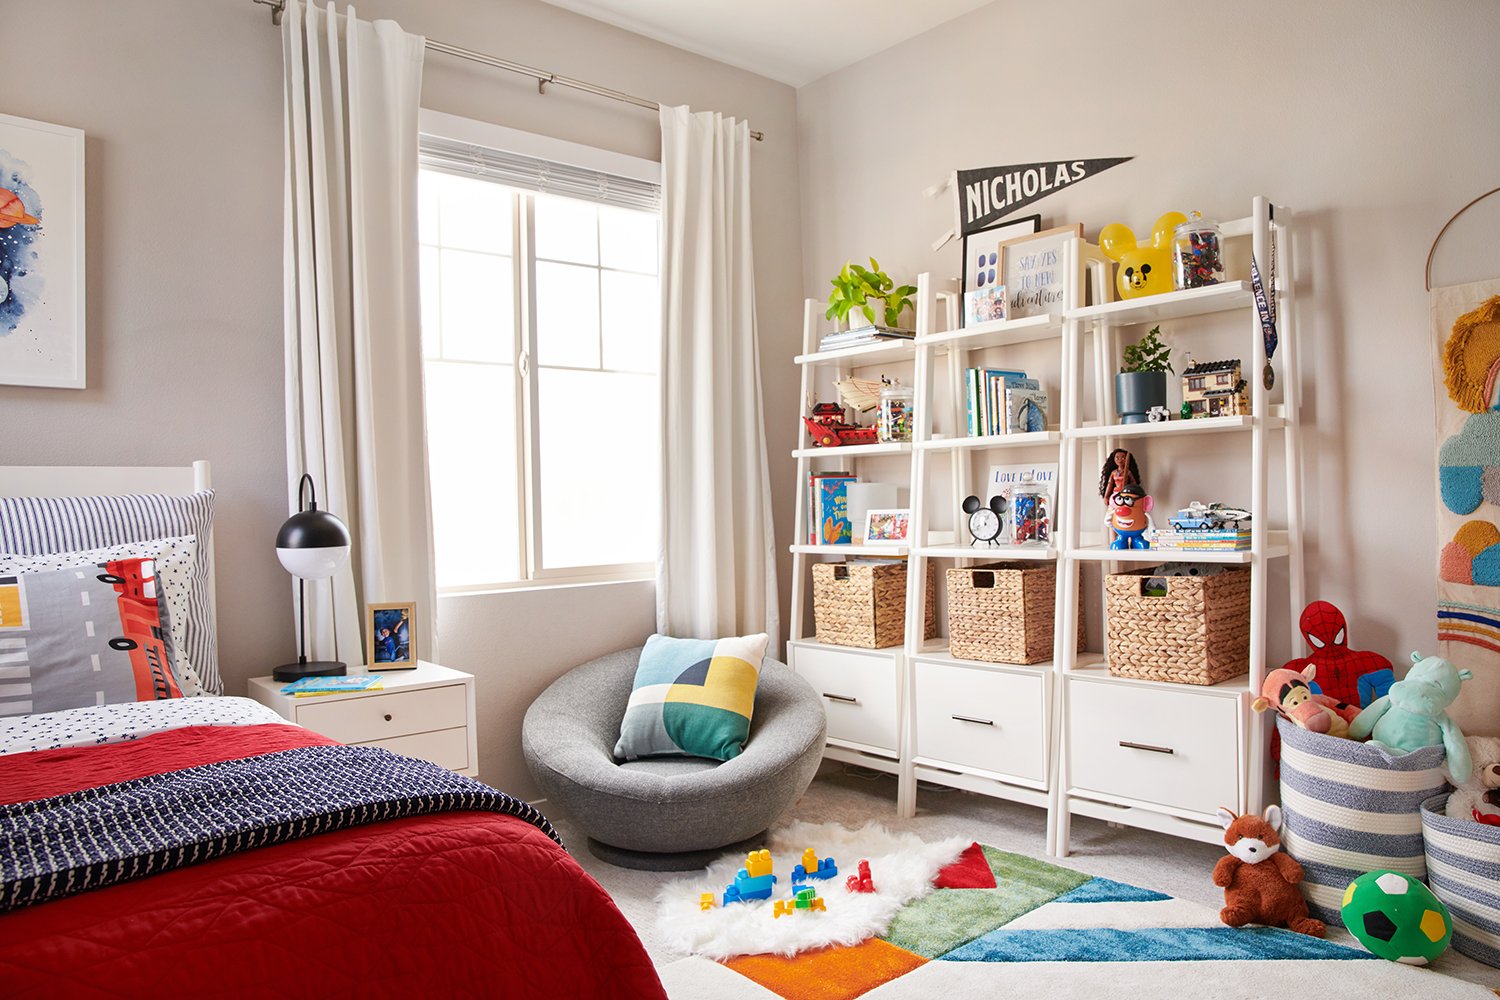 20 Best Toy Storage Ideas - Home Design & Lifestyle